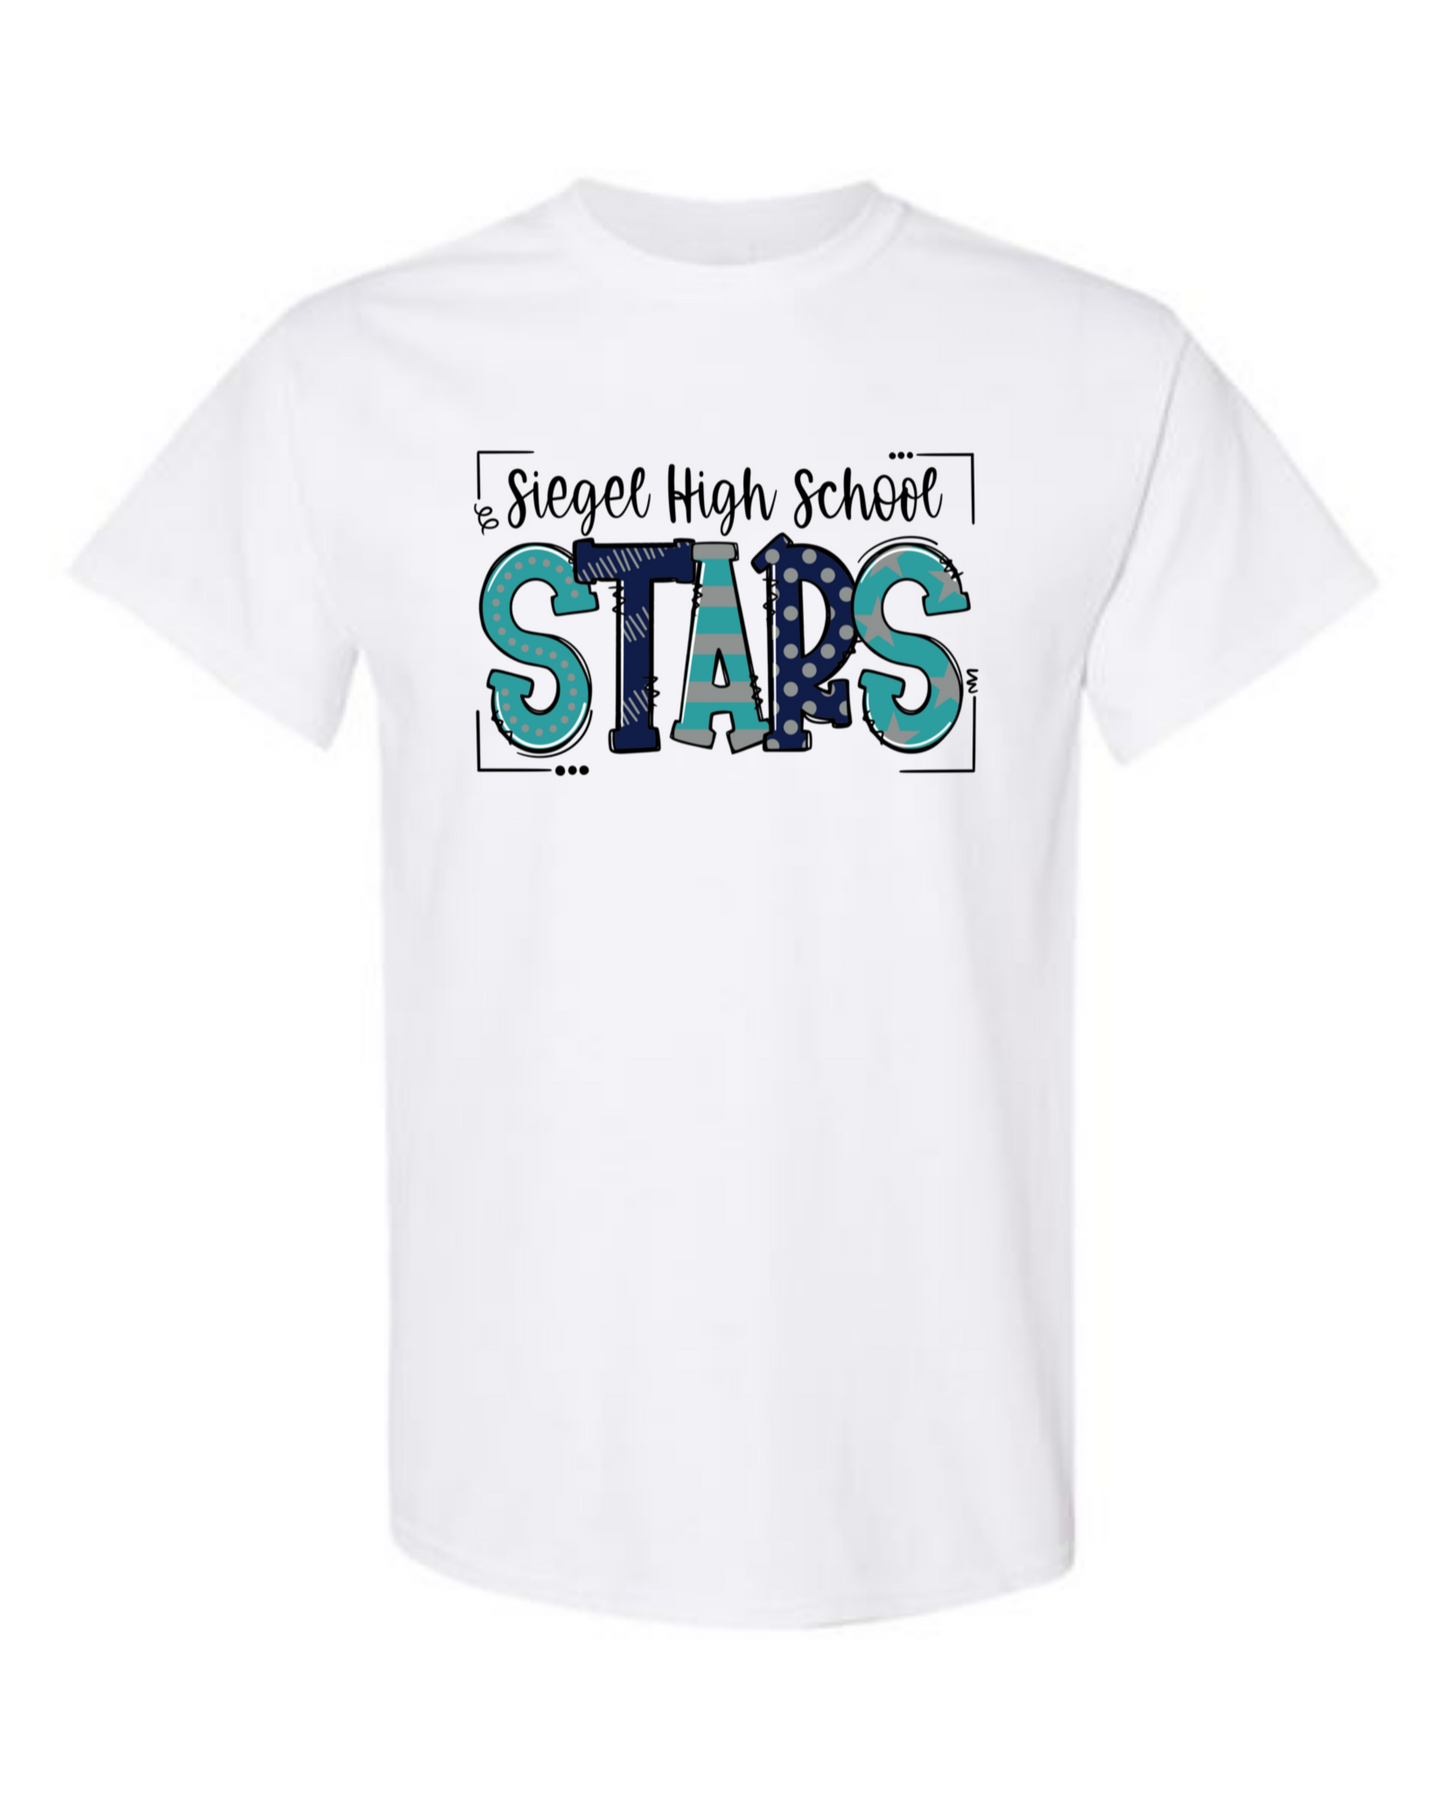 Siegel High School Stars Tshirt